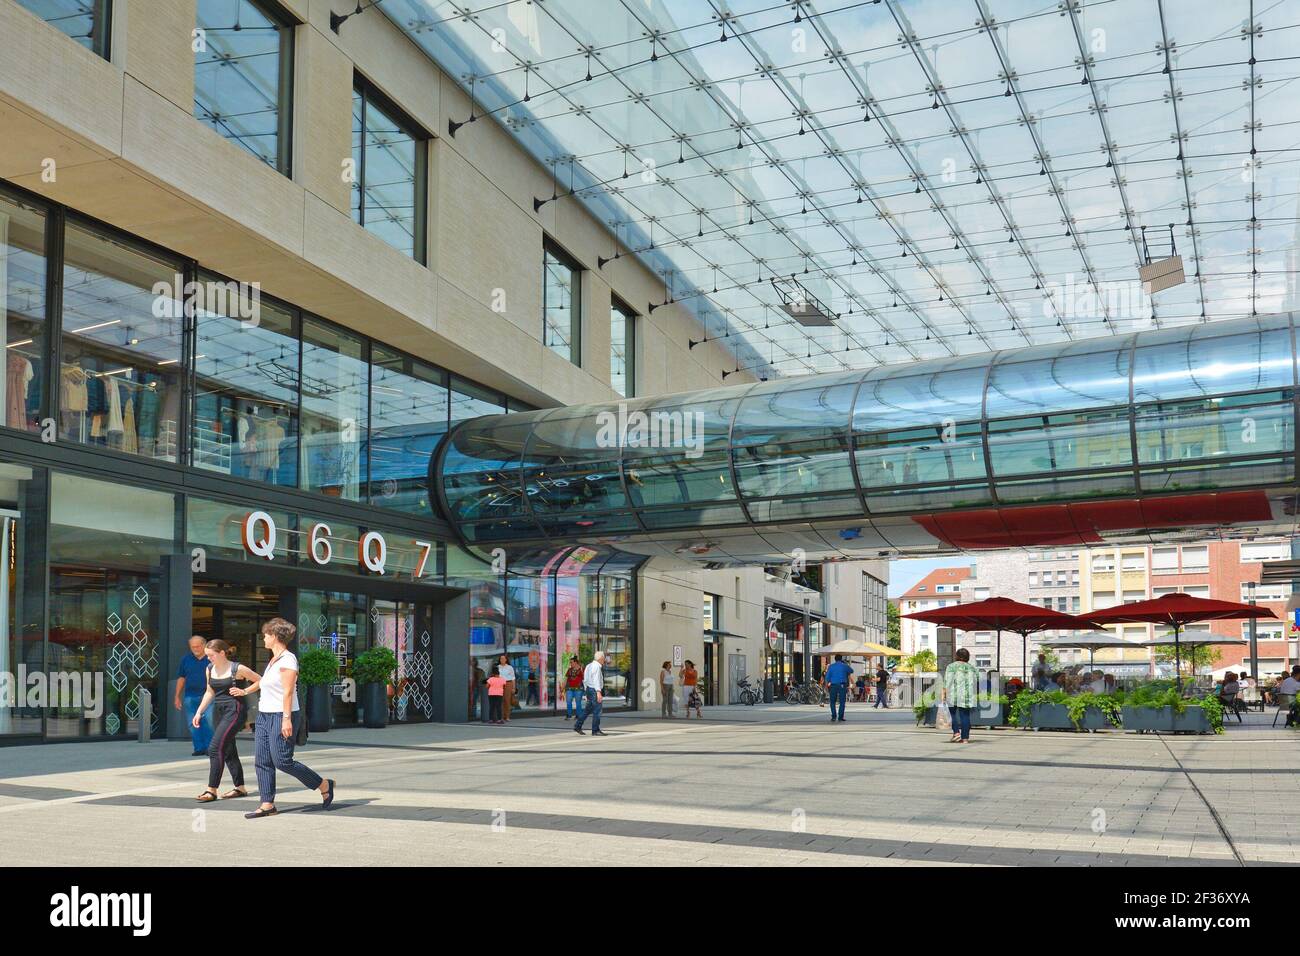 Mannheim, Germania - Luglio 2019: Ingresso del grande e moderno centro commerciale chiamato 'Q6 Q7' con persone nel centro di Mannheim Foto Stock